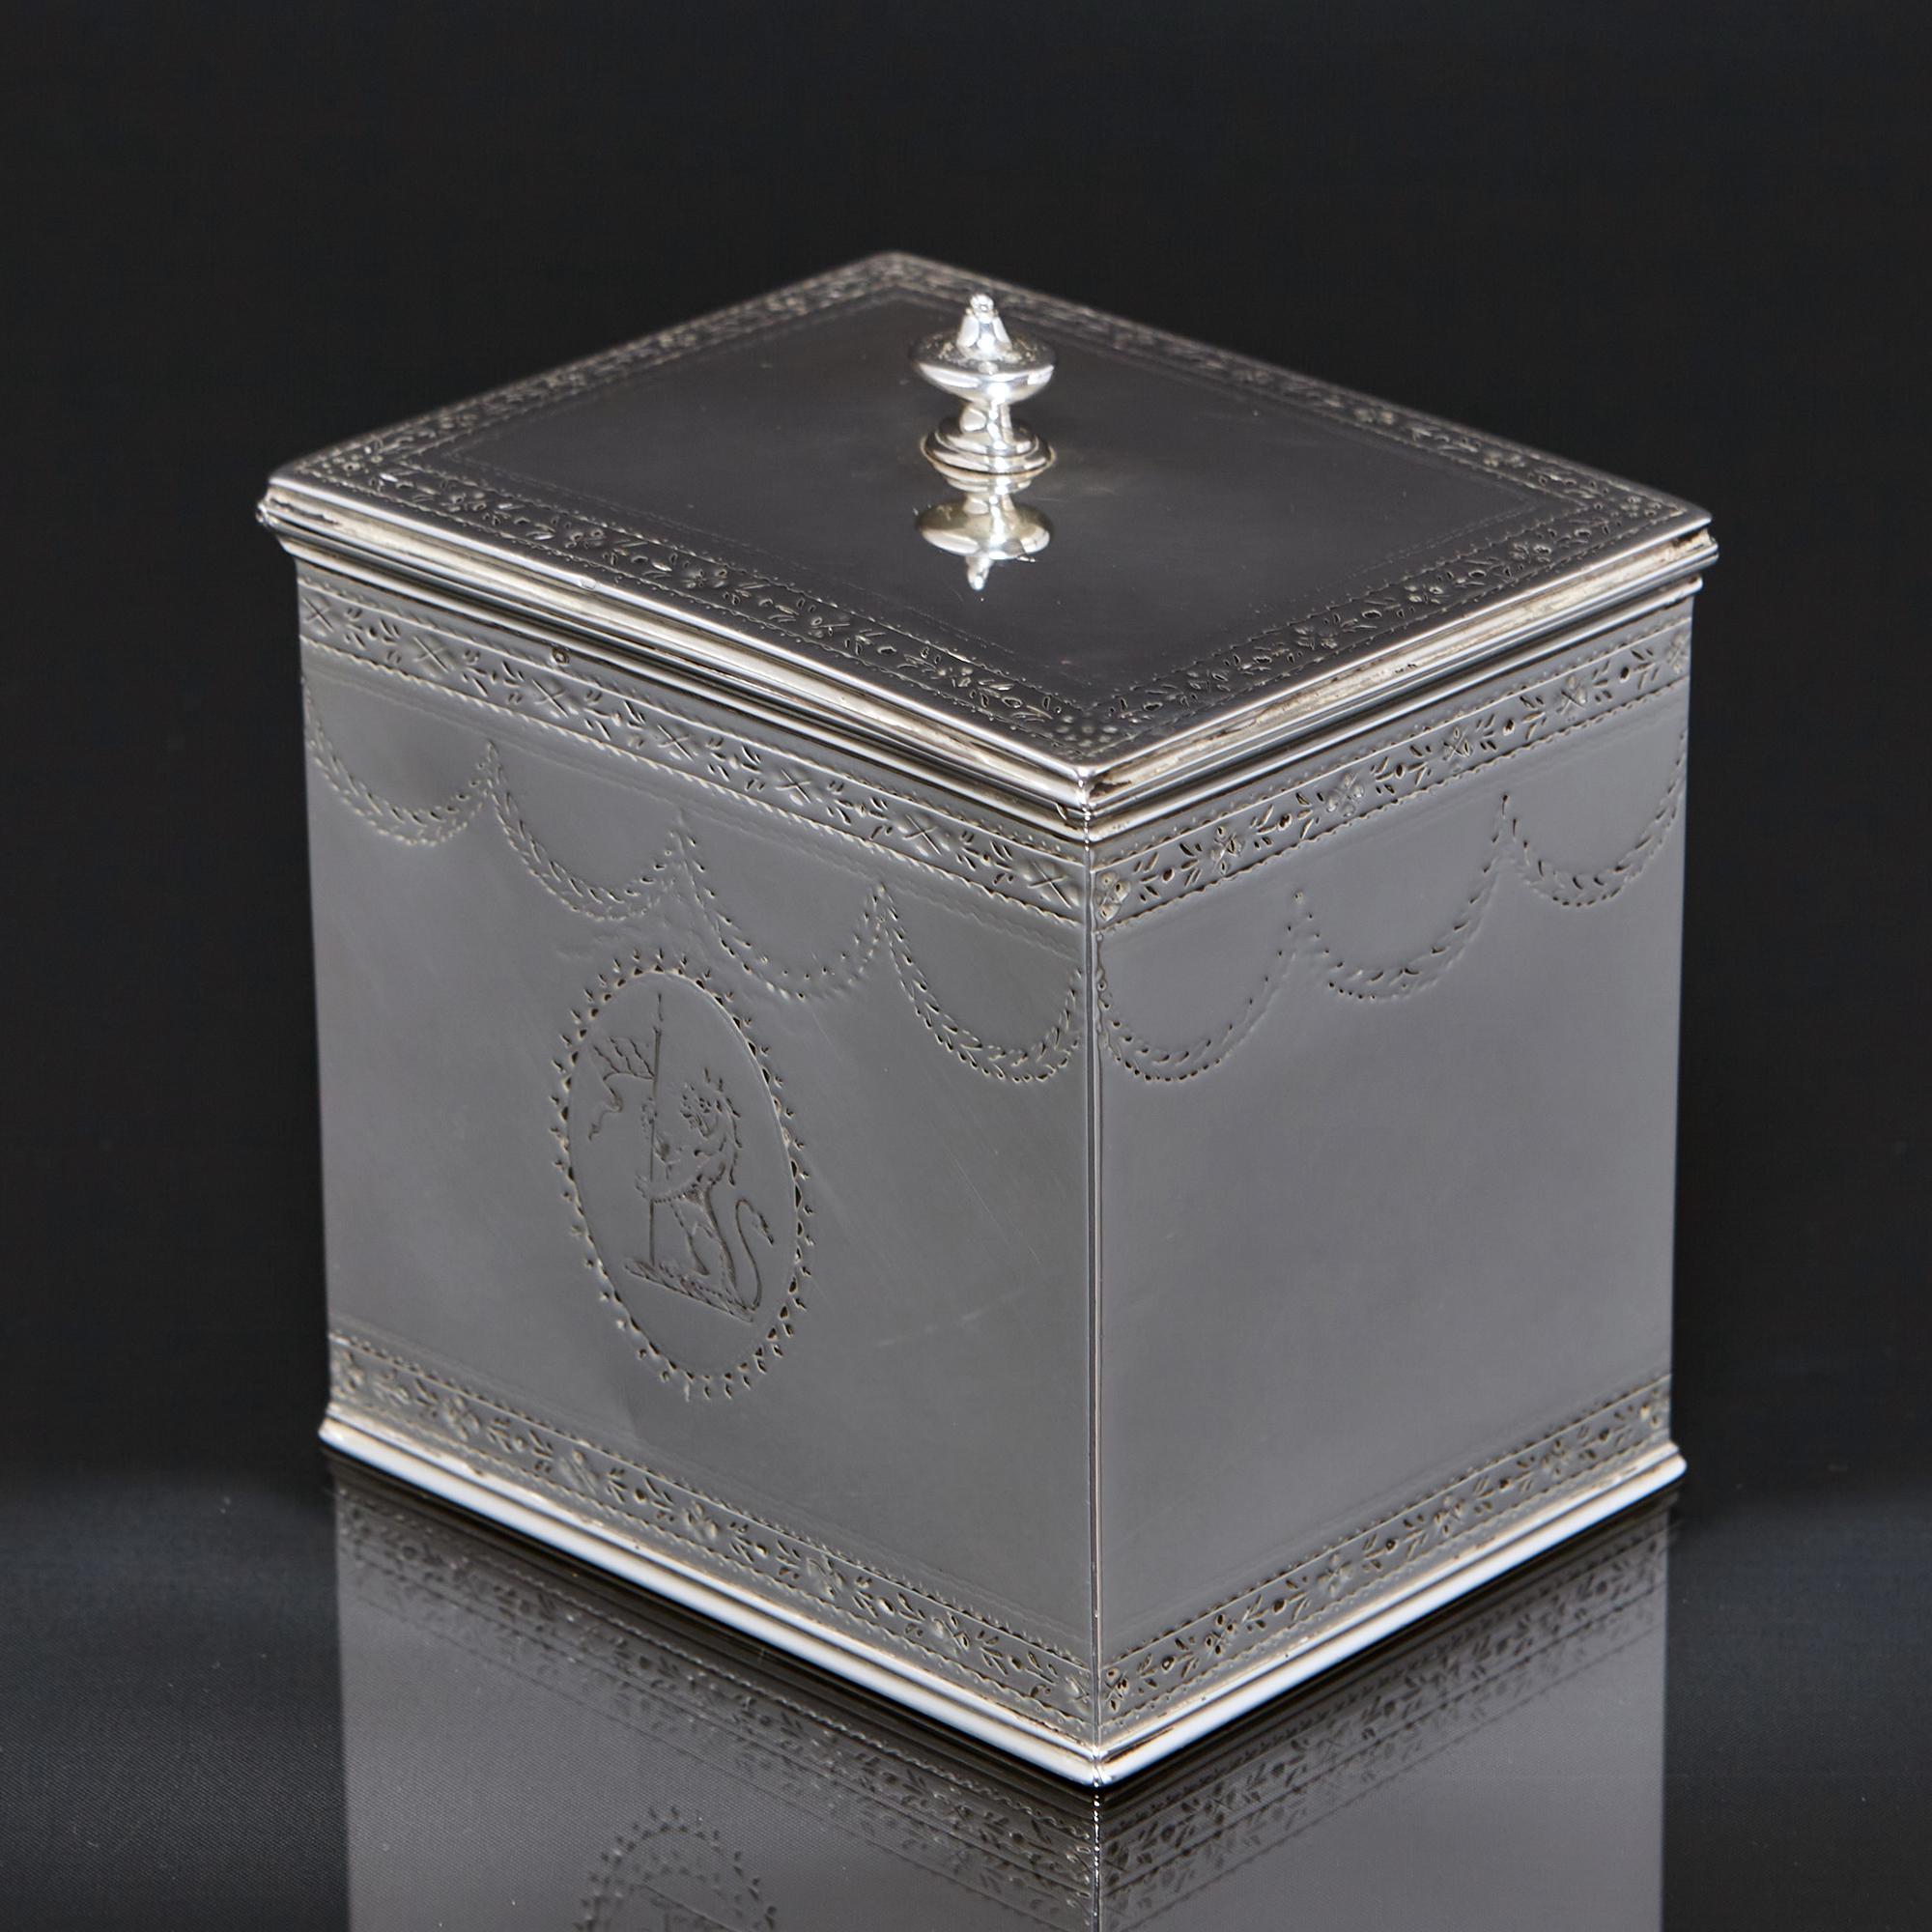 Klassische silberne Teedose aus dem späten 18. Jahrhundert in länglicher Form mit fein handgravierten Bändern und Bügeln an den Seiten und einem Klappdeckel mit ovalem, urnenförmigem Abschluss. 

Auf der einen Seite des Caddys ist ein Familienwappen